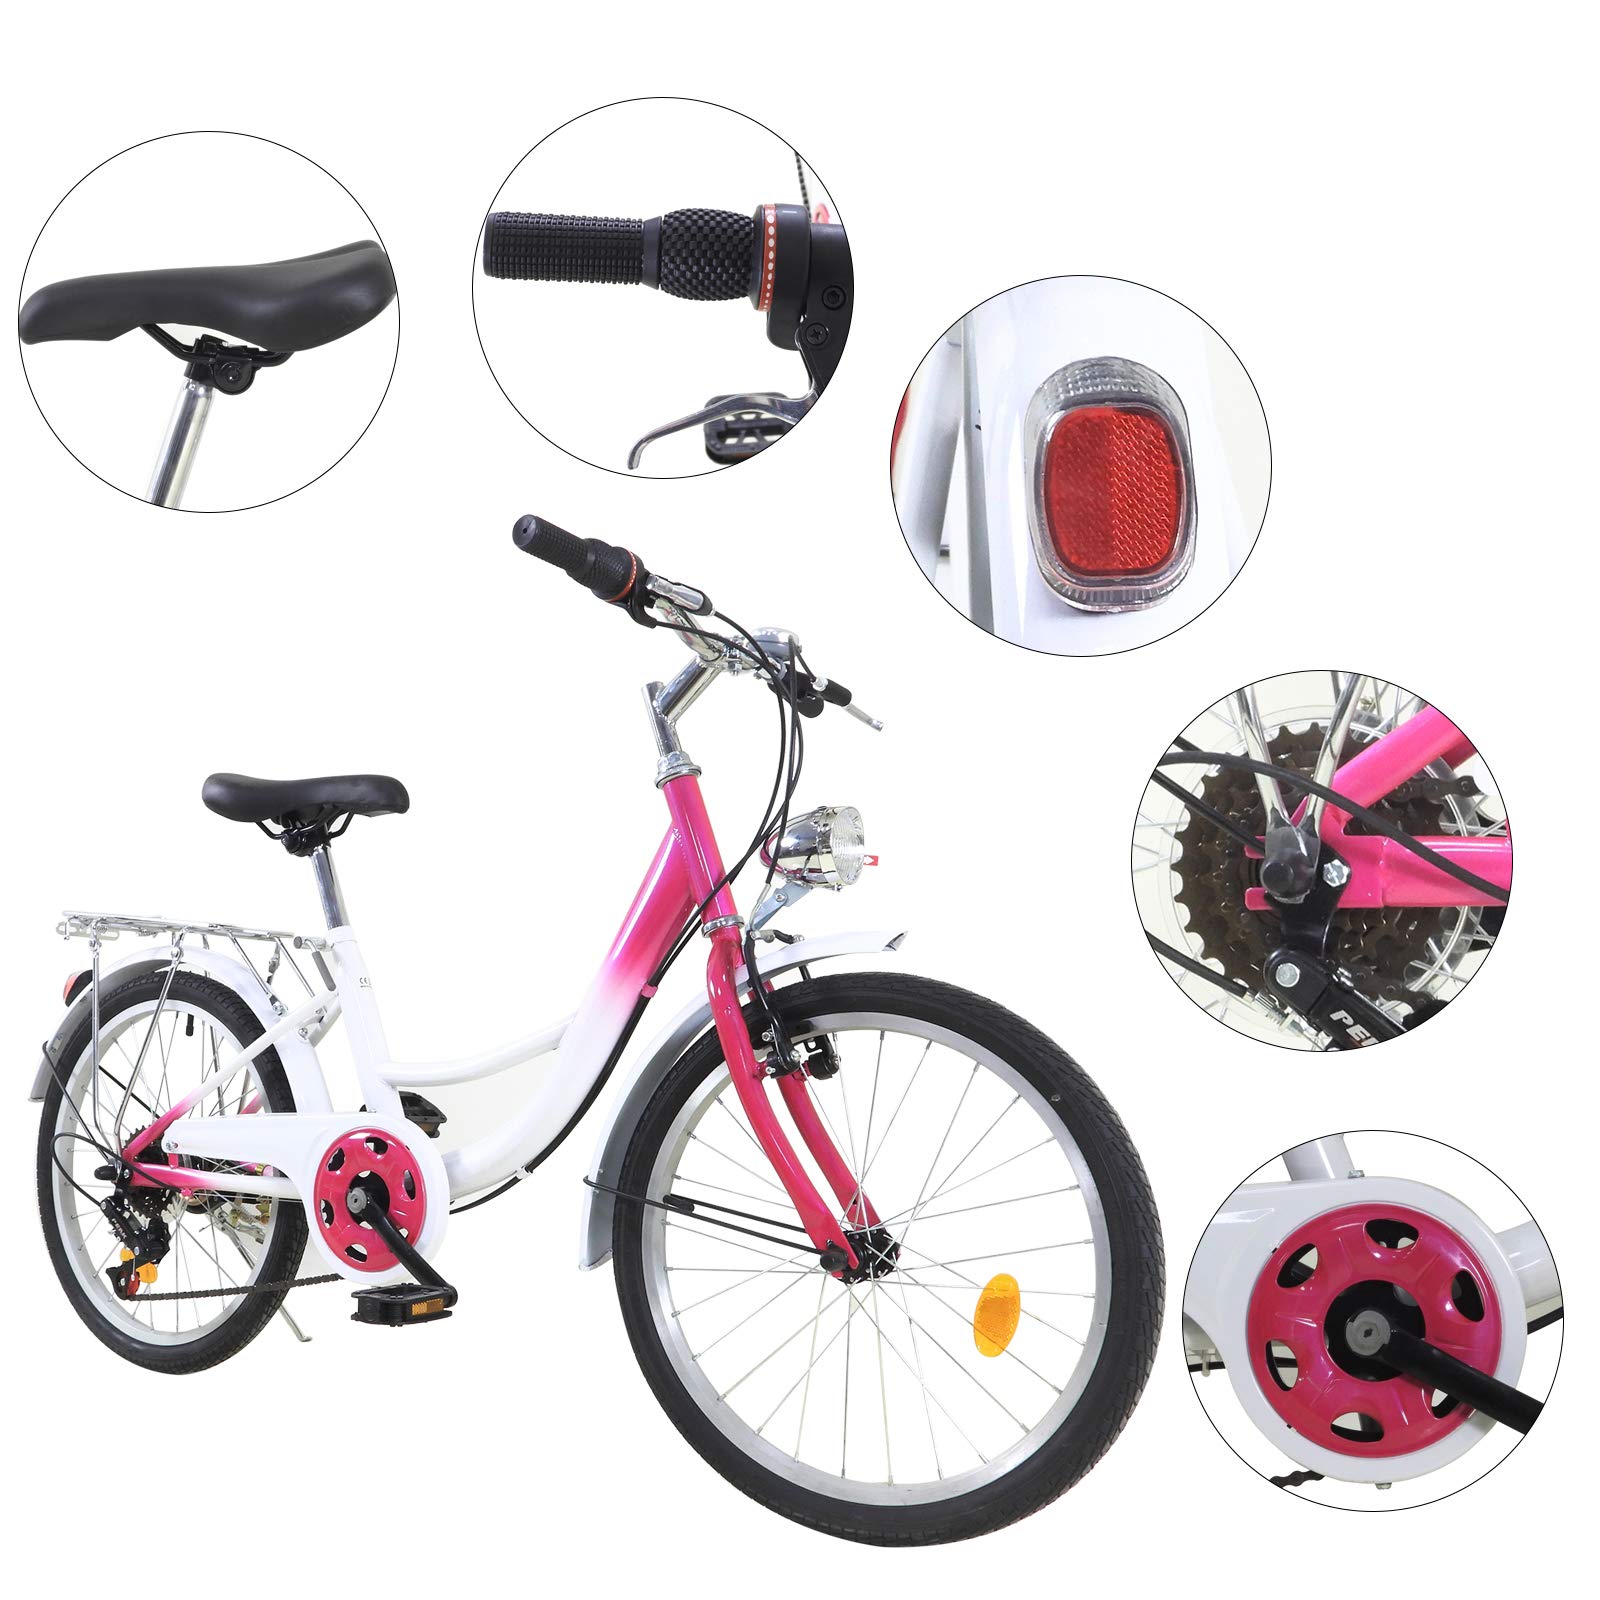 Vélo pour enfant 20 pouces 6 vitesses - Pour garçons et filles - Pour 12-16 ans - Rose et blanc - Économie d'énergie et protection de l'environnement